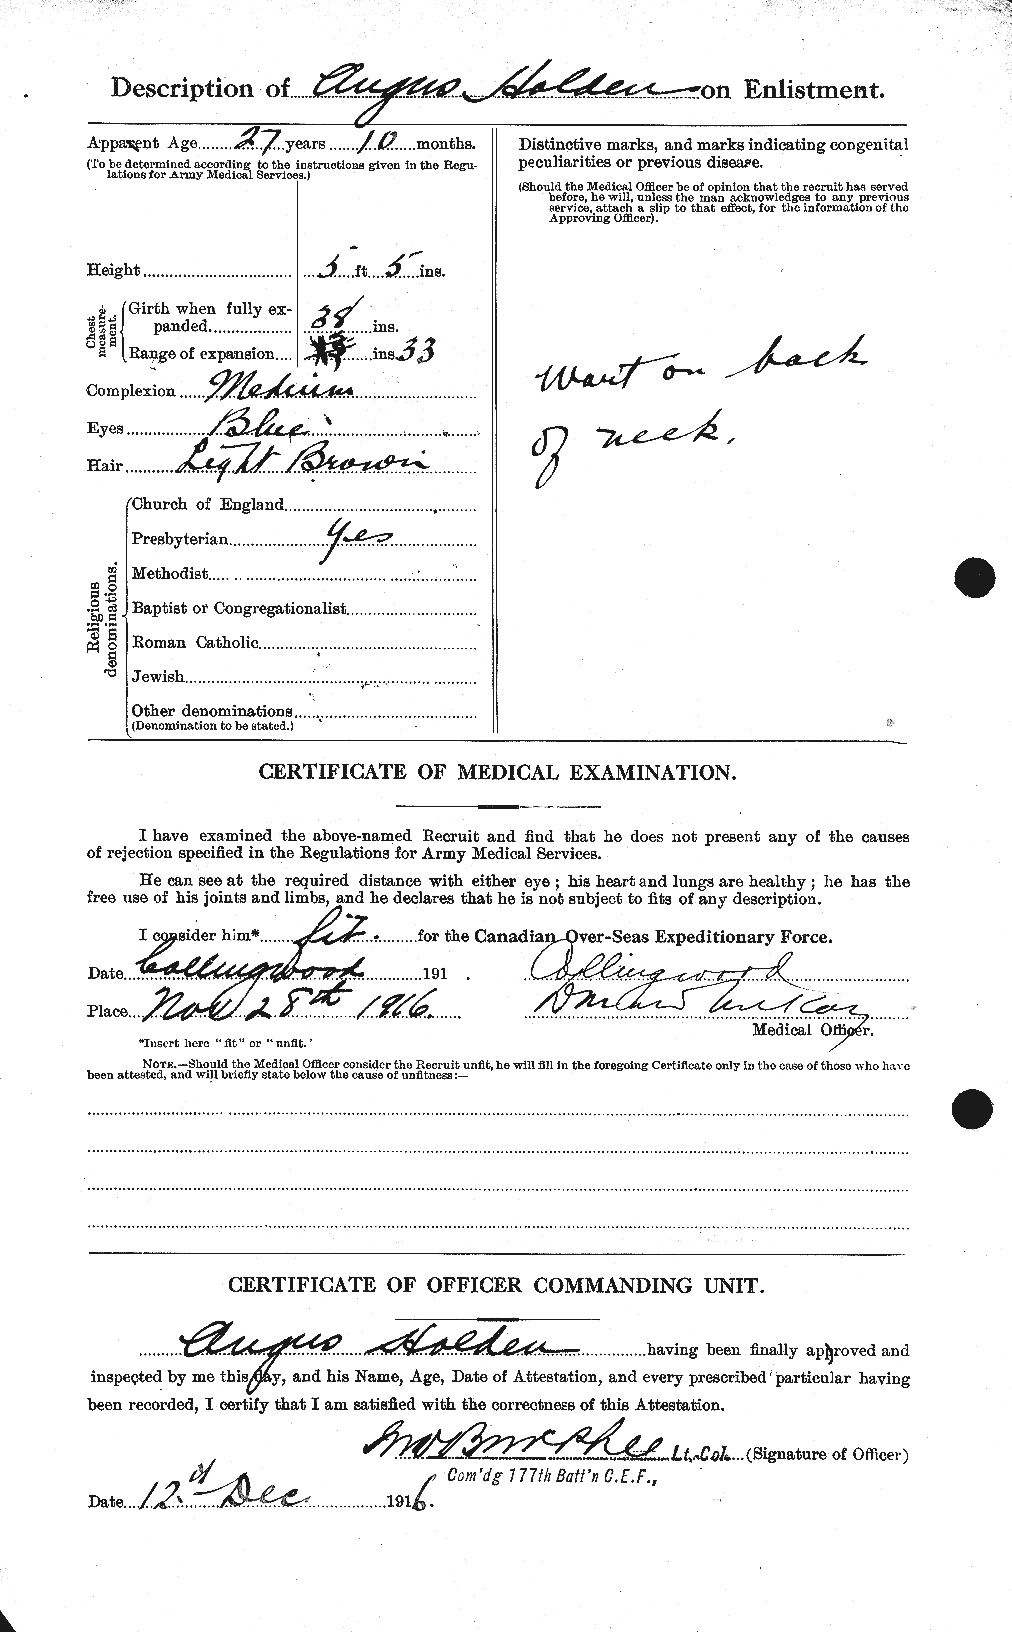 Dossiers du Personnel de la Première Guerre mondiale - CEC 396666b